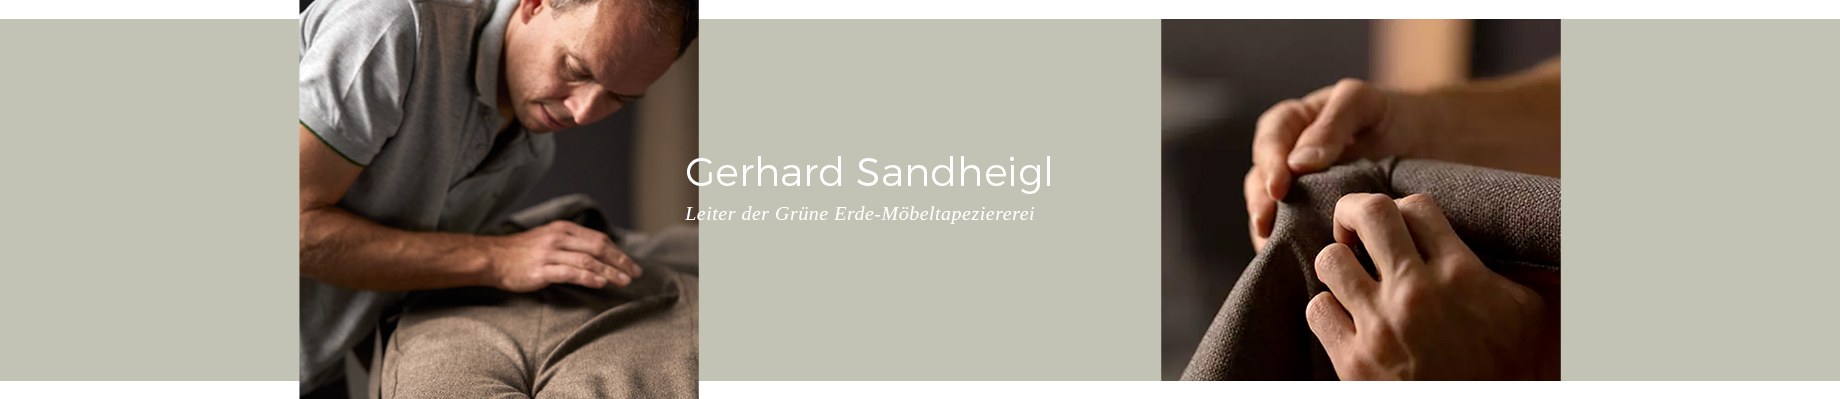 Polstermöbelfertigung: durch und durch Handarbeit - Gerhard Sandheigl (Leiter Grüne Erde Möbeltapeziererei)